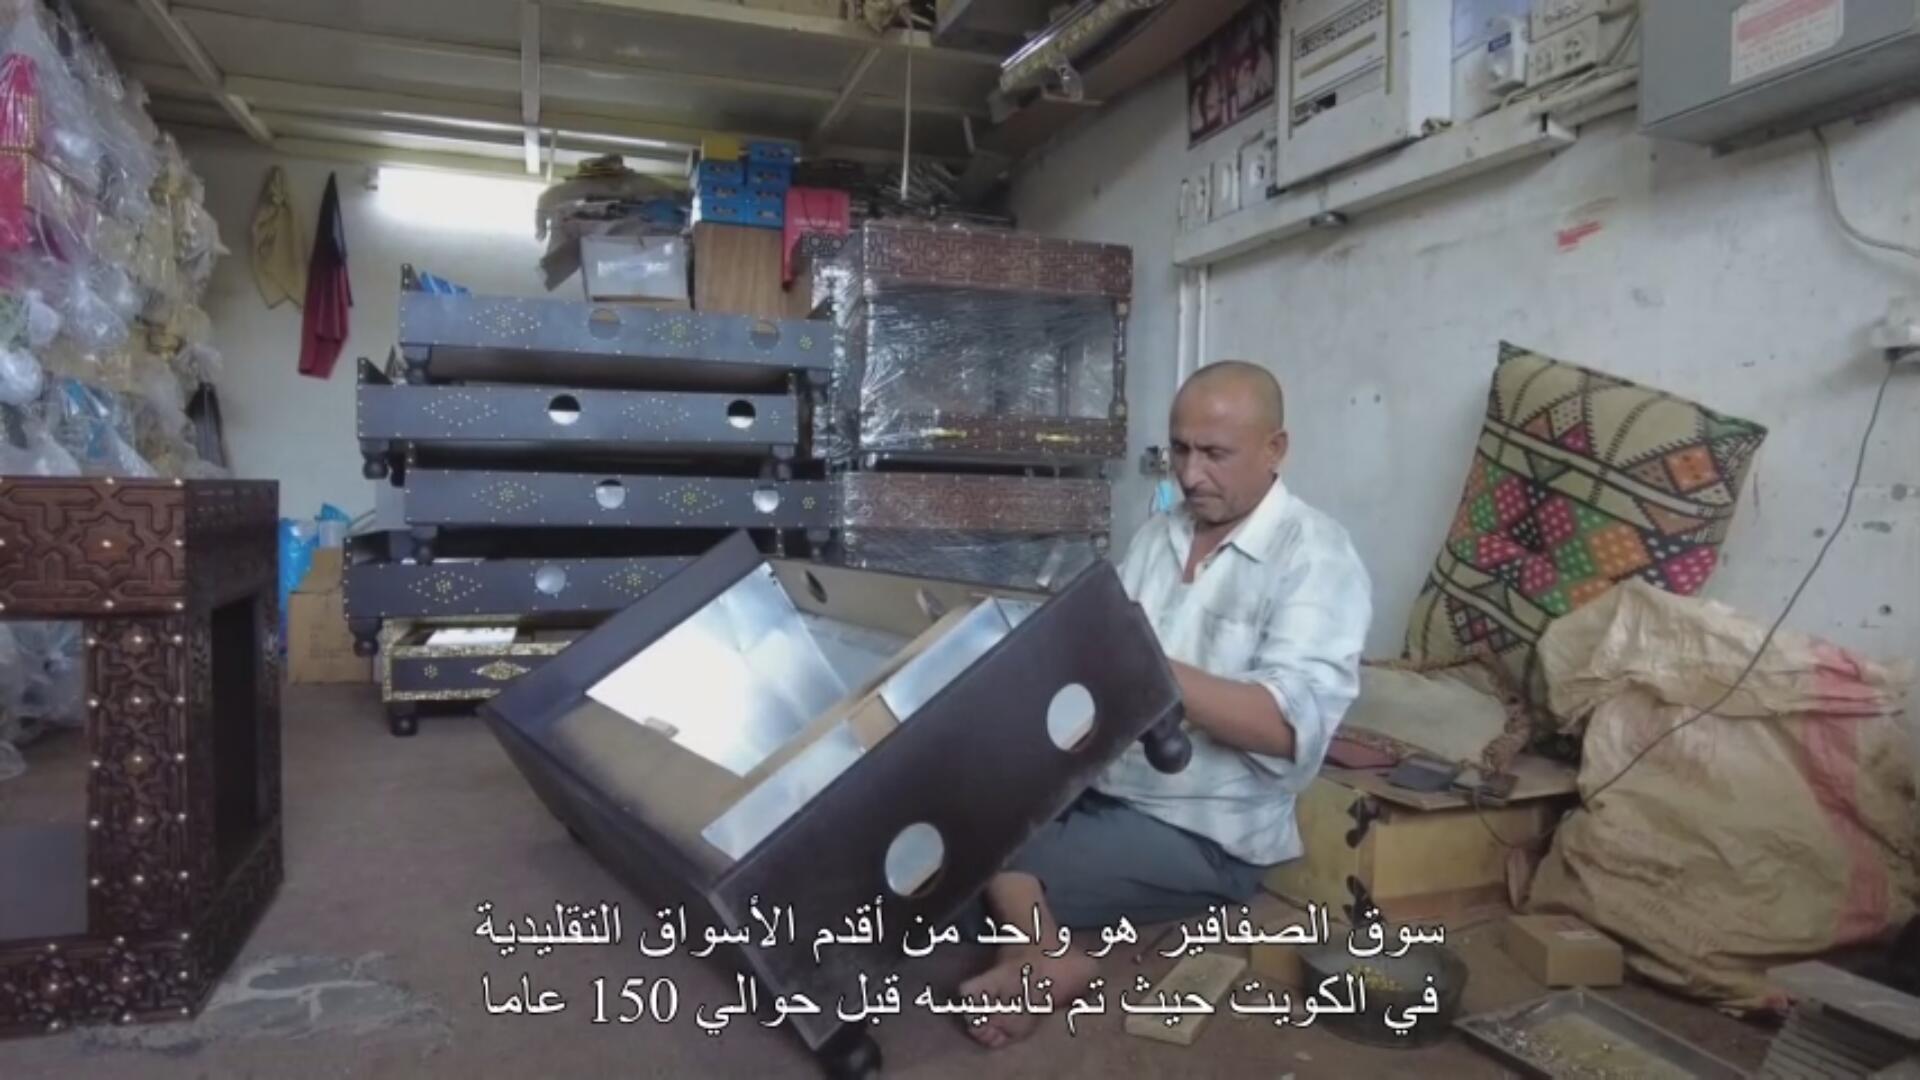 فيديو: زيارة إلى سوق الأواني المنزلية الشهير في الكويت